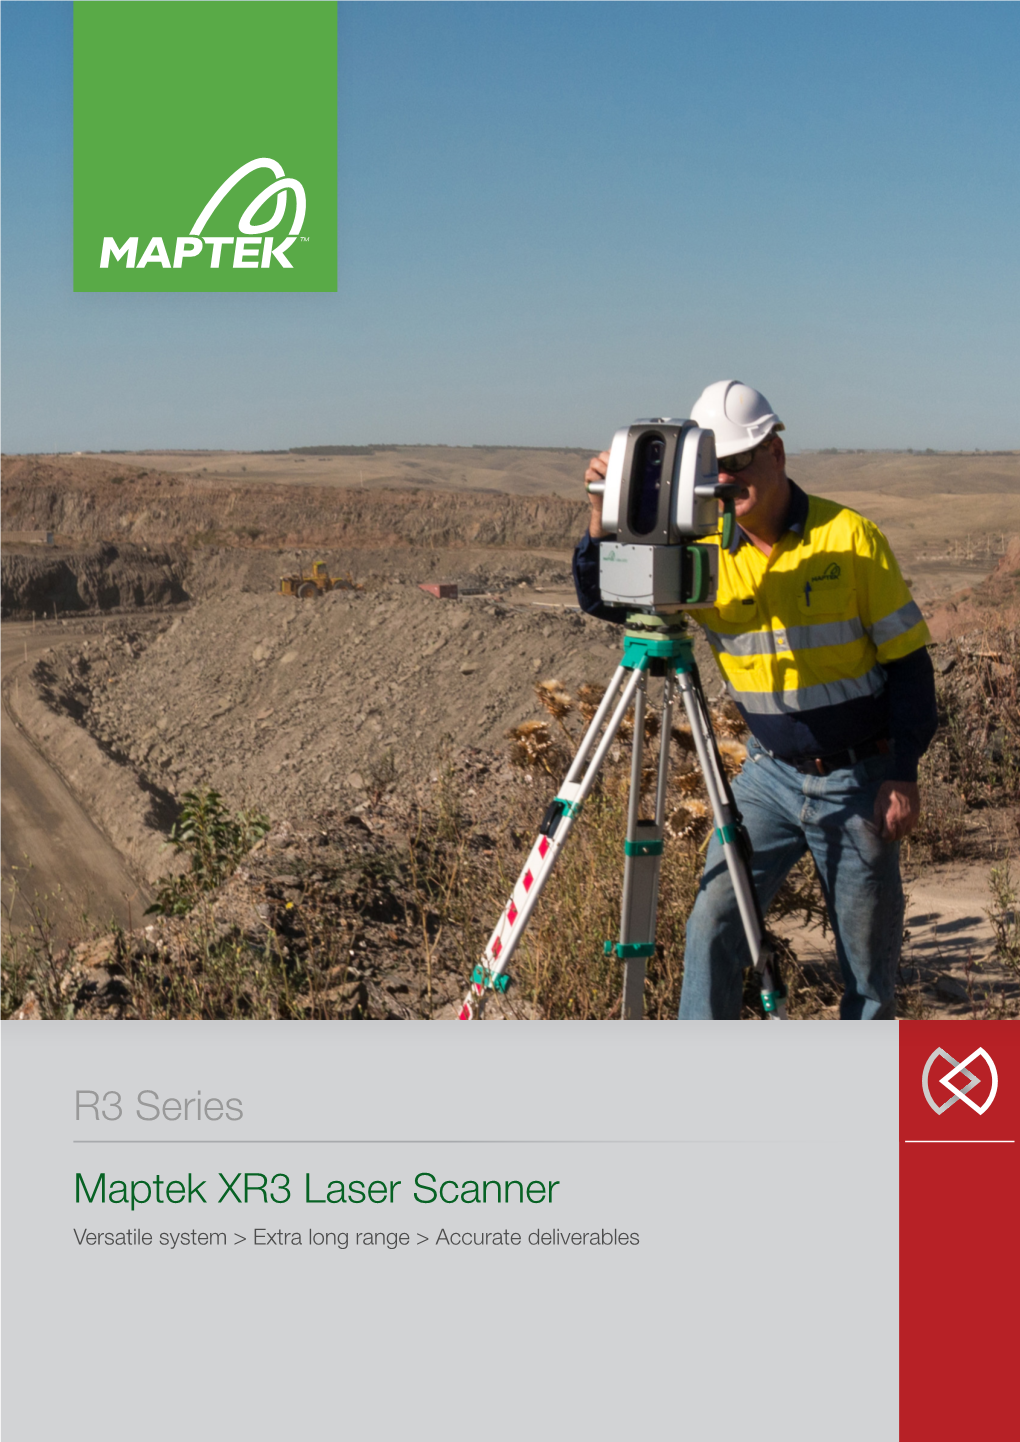 Maptek XR3 Laser Scanner R3 Series